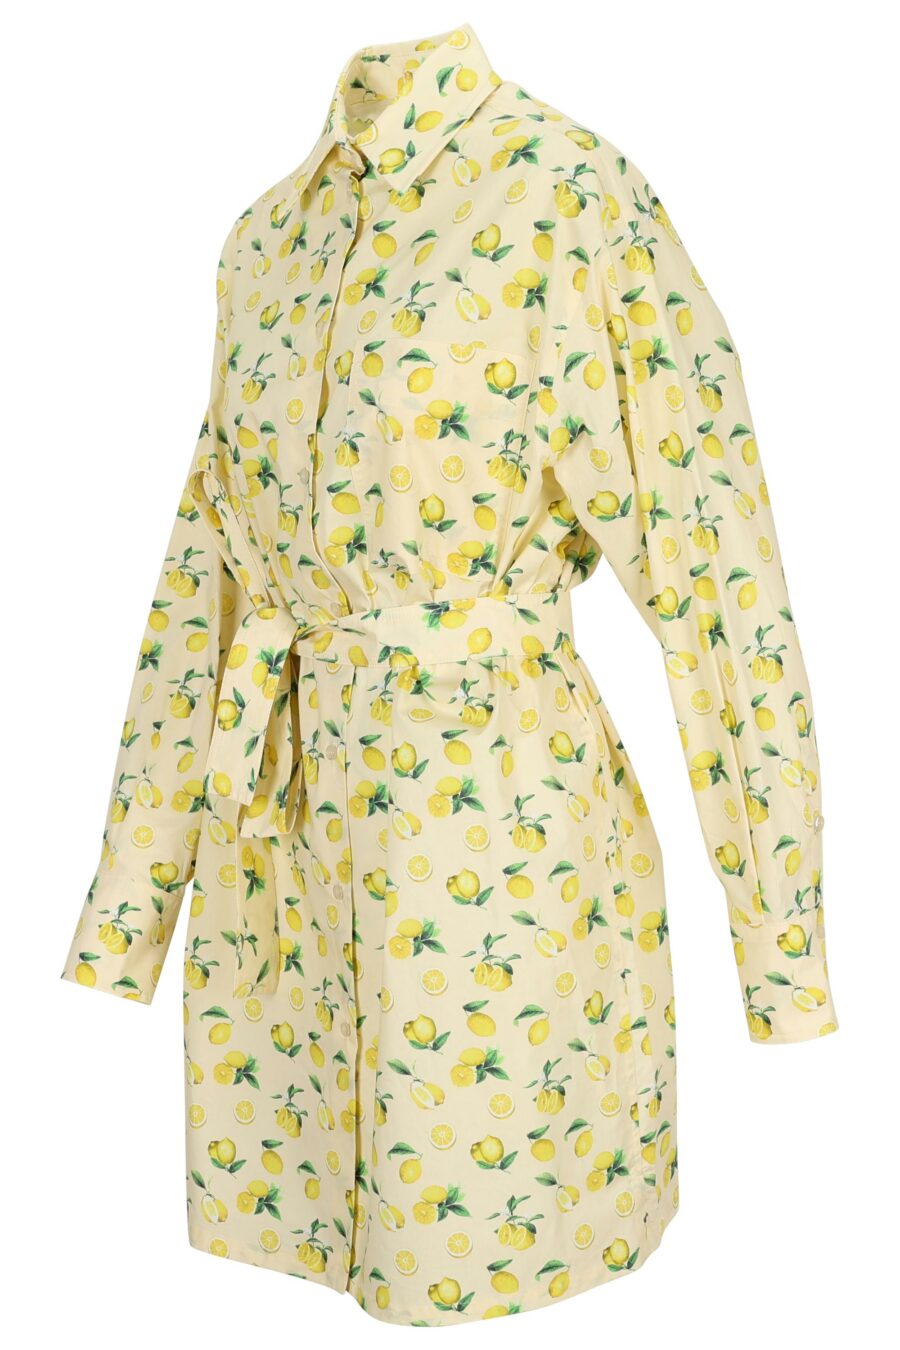 Vestido manga larga color vainilla con estampado limones - 22211242060013 1